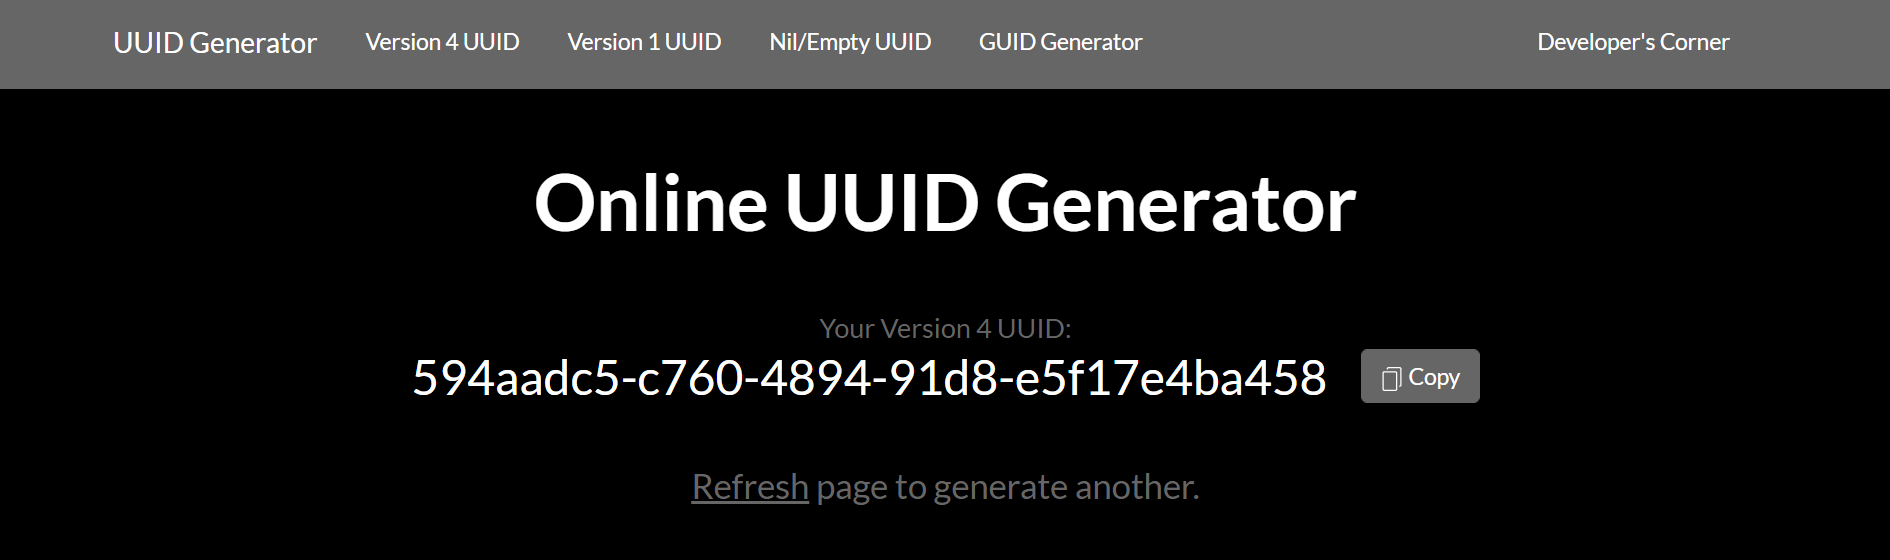 Xüsusi bir UUID tərəfindən hazırlanmış uuidgenerator.net ana ekranı